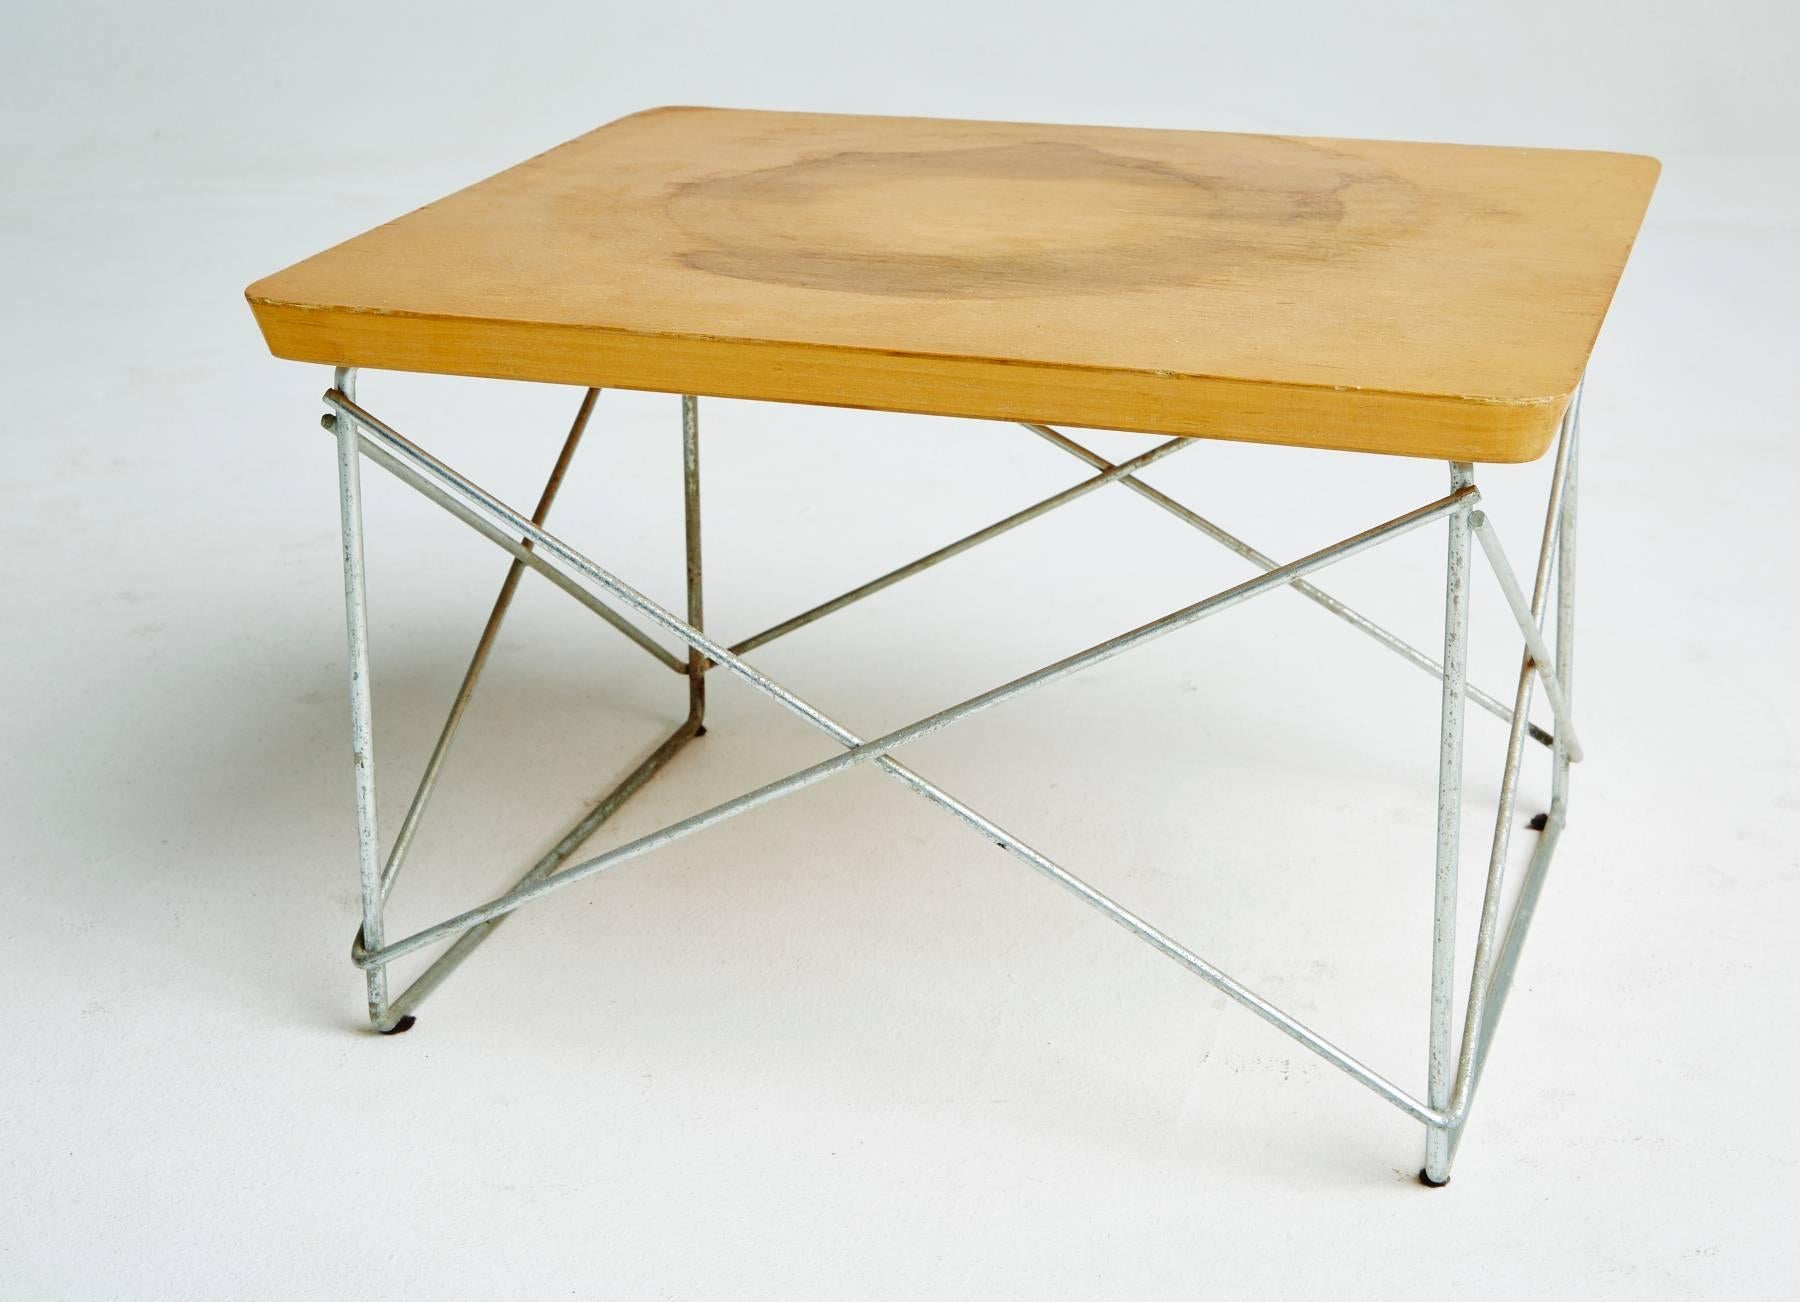 Américain Tables LTR en bouleau des années 1950 par Eames pour Herman Miller, première production, signées